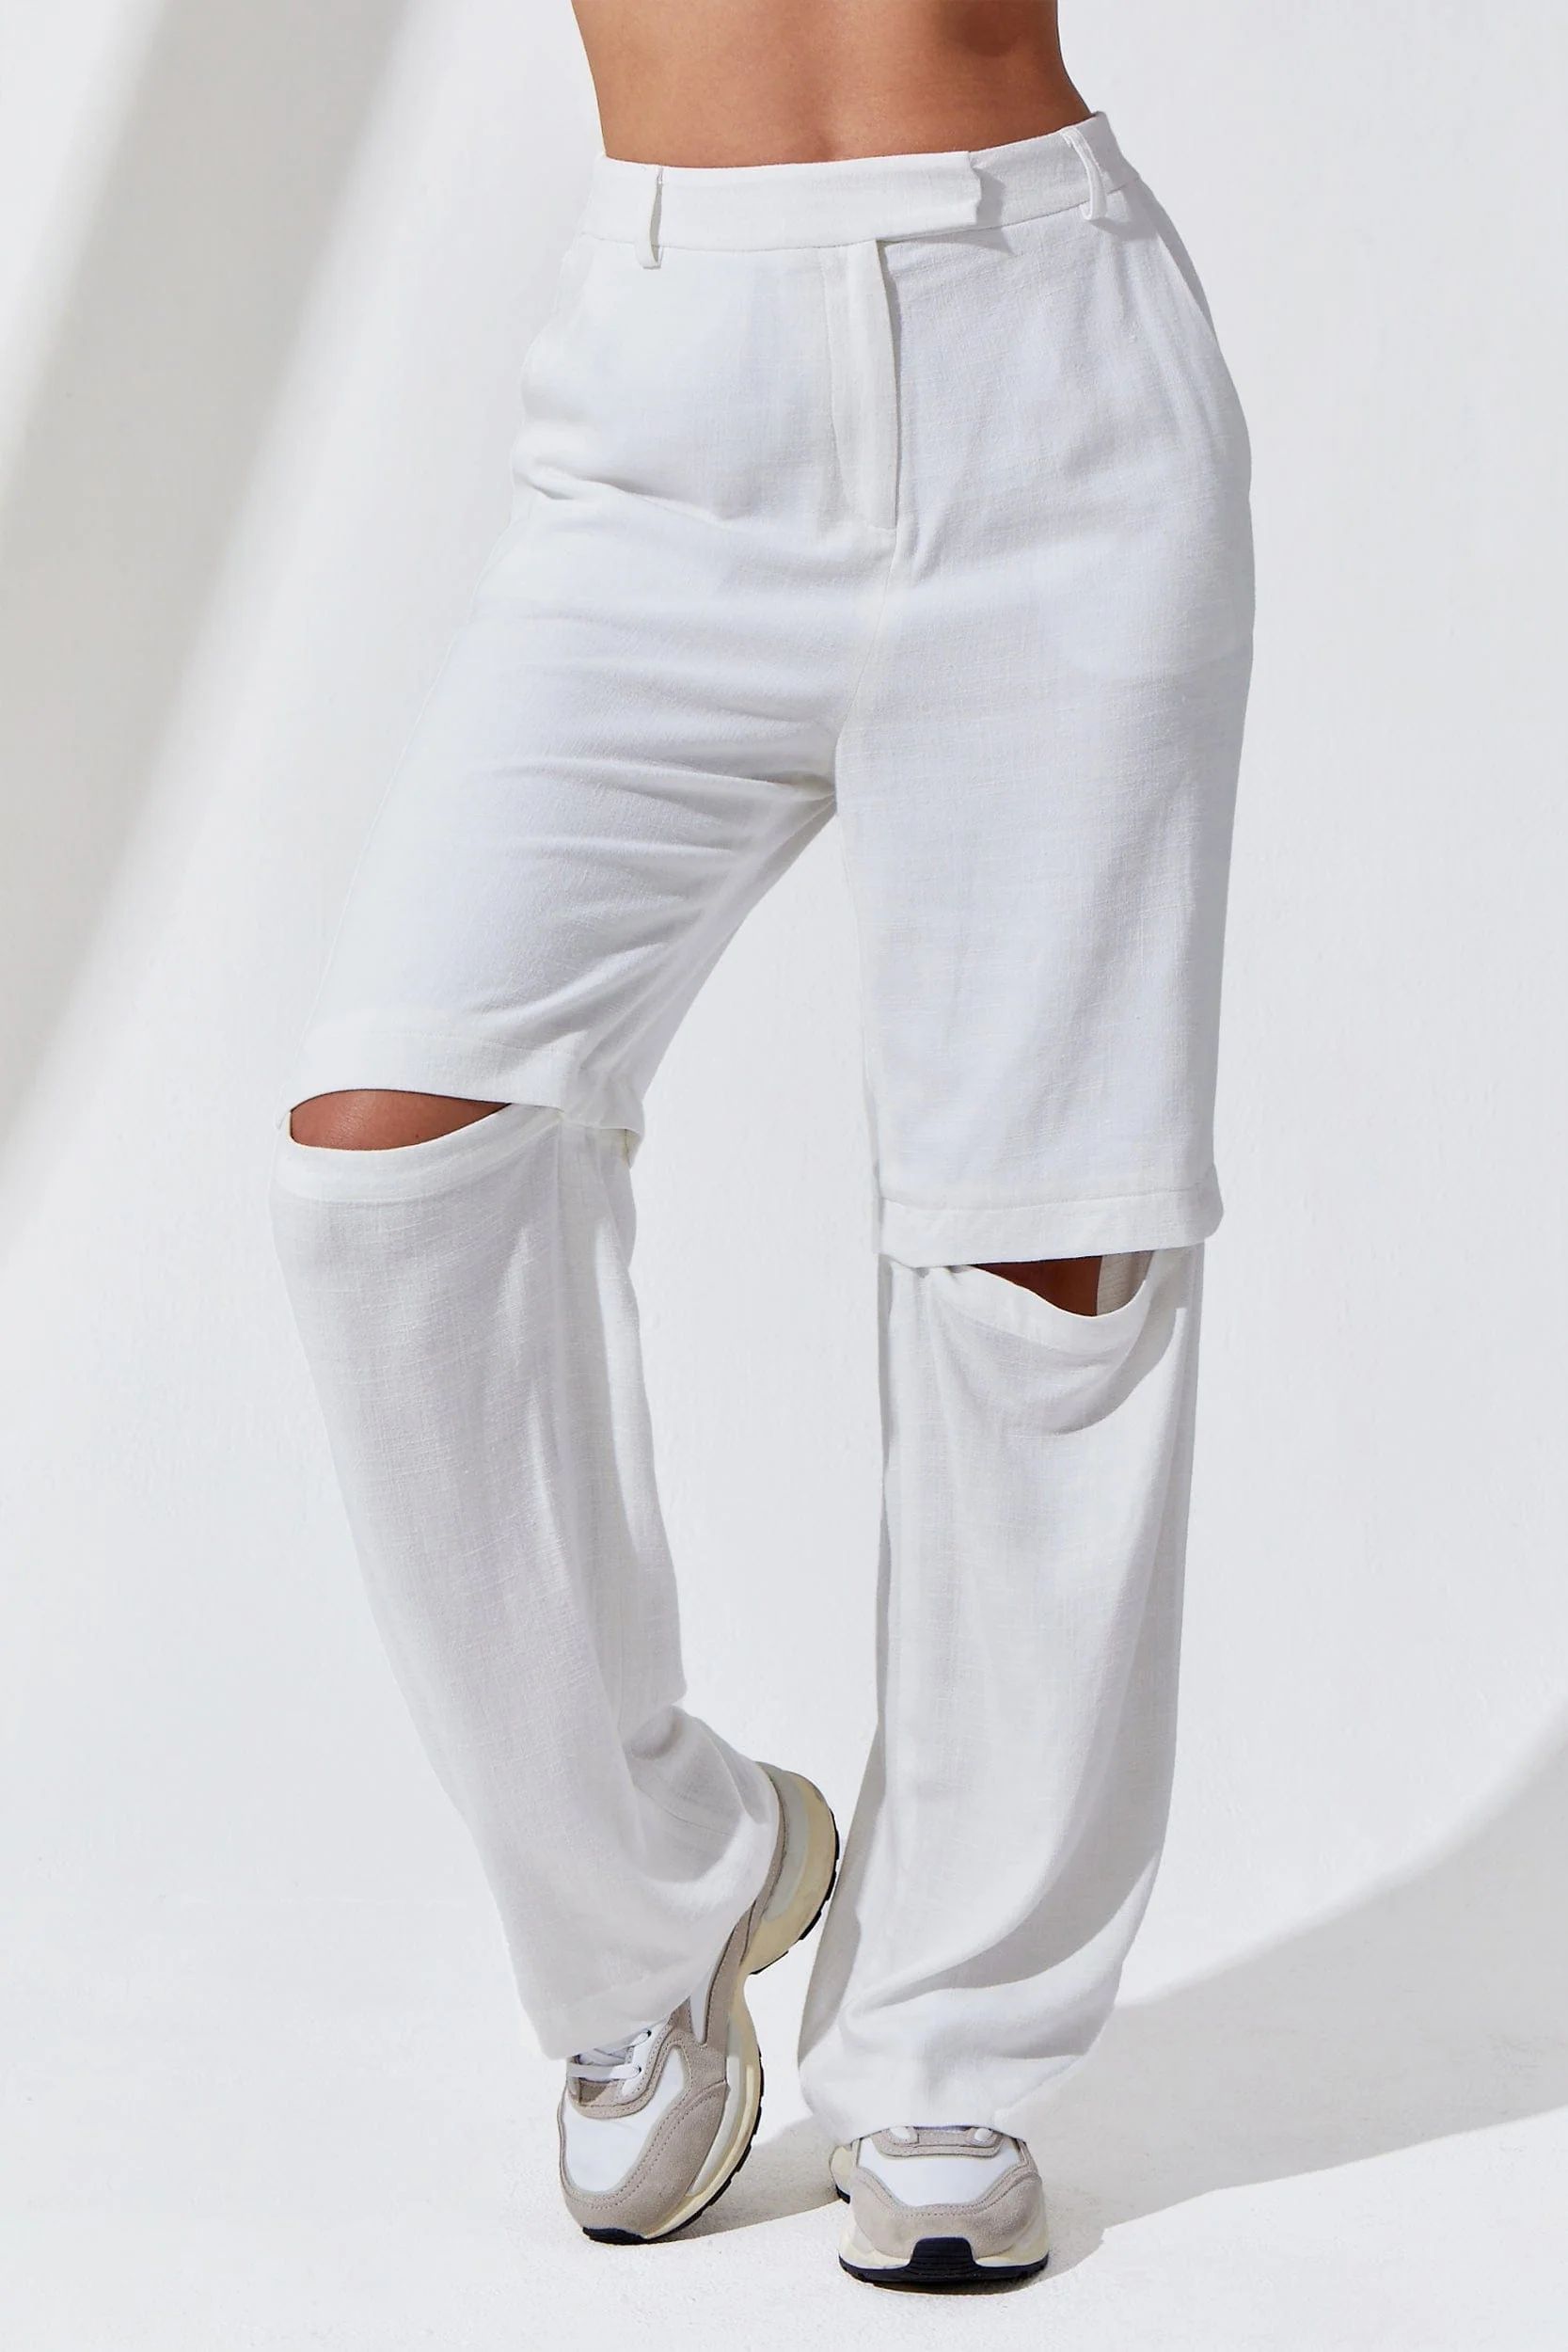 Essential Linen Pant - White | The Noli Shop